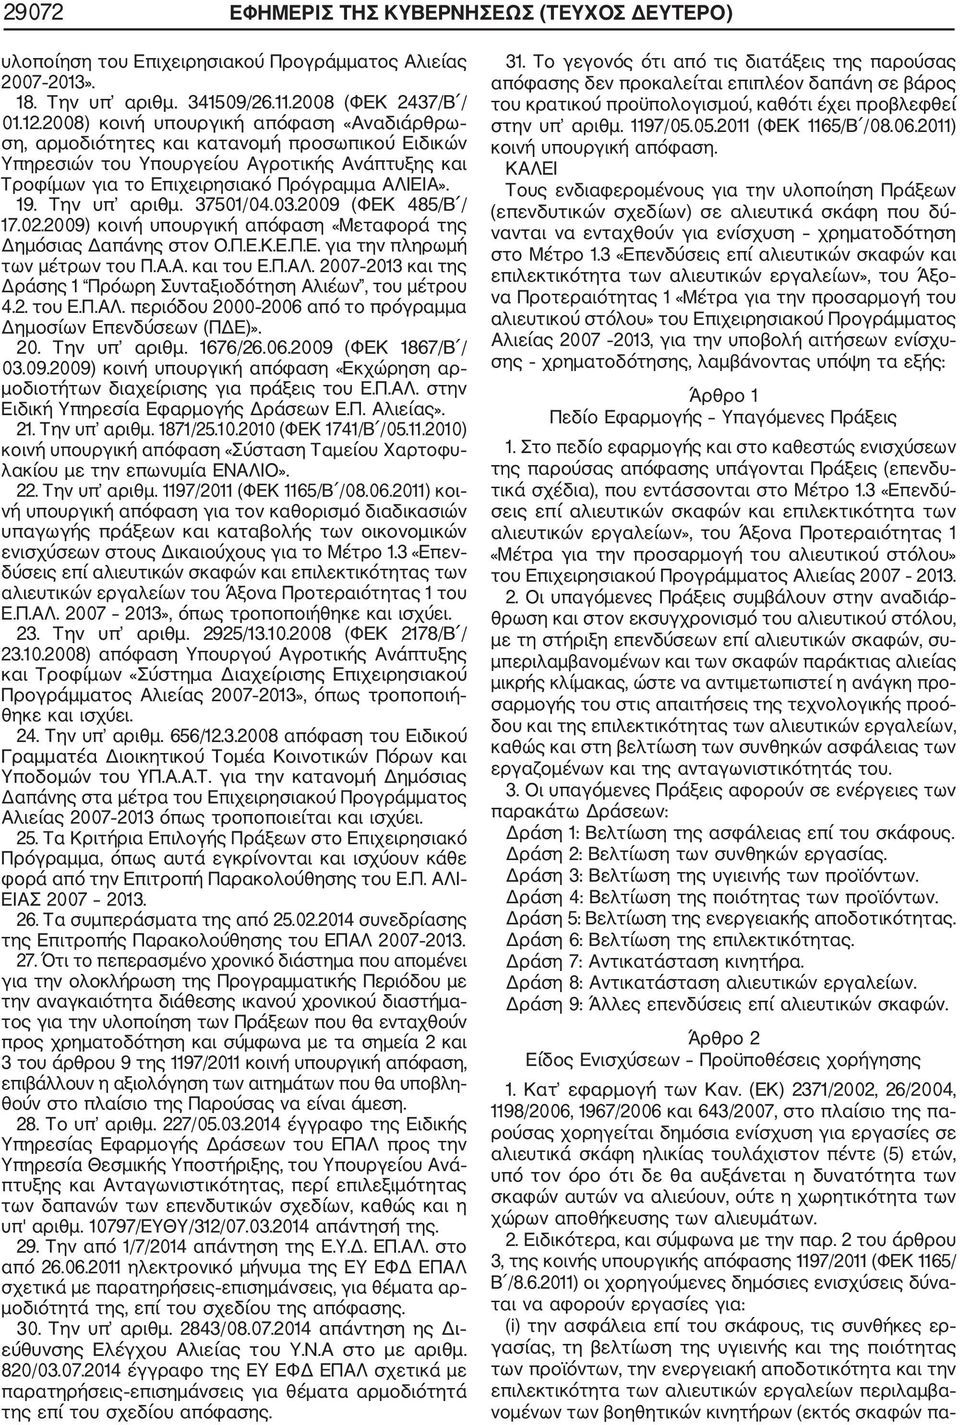 Την υπ αριθμ. 37501/04.03.2009 (ΦΕΚ 485/Β / 17.02.2009) κοινή υπουργική απόφαση «Μεταφορά της Δημόσιας Δαπάνης στον Ο.Π.Ε.Κ.Ε.Π.Ε. για την πληρωμή των μέτρων του Π.Α.Α. και του Ε.Π.ΑΛ.